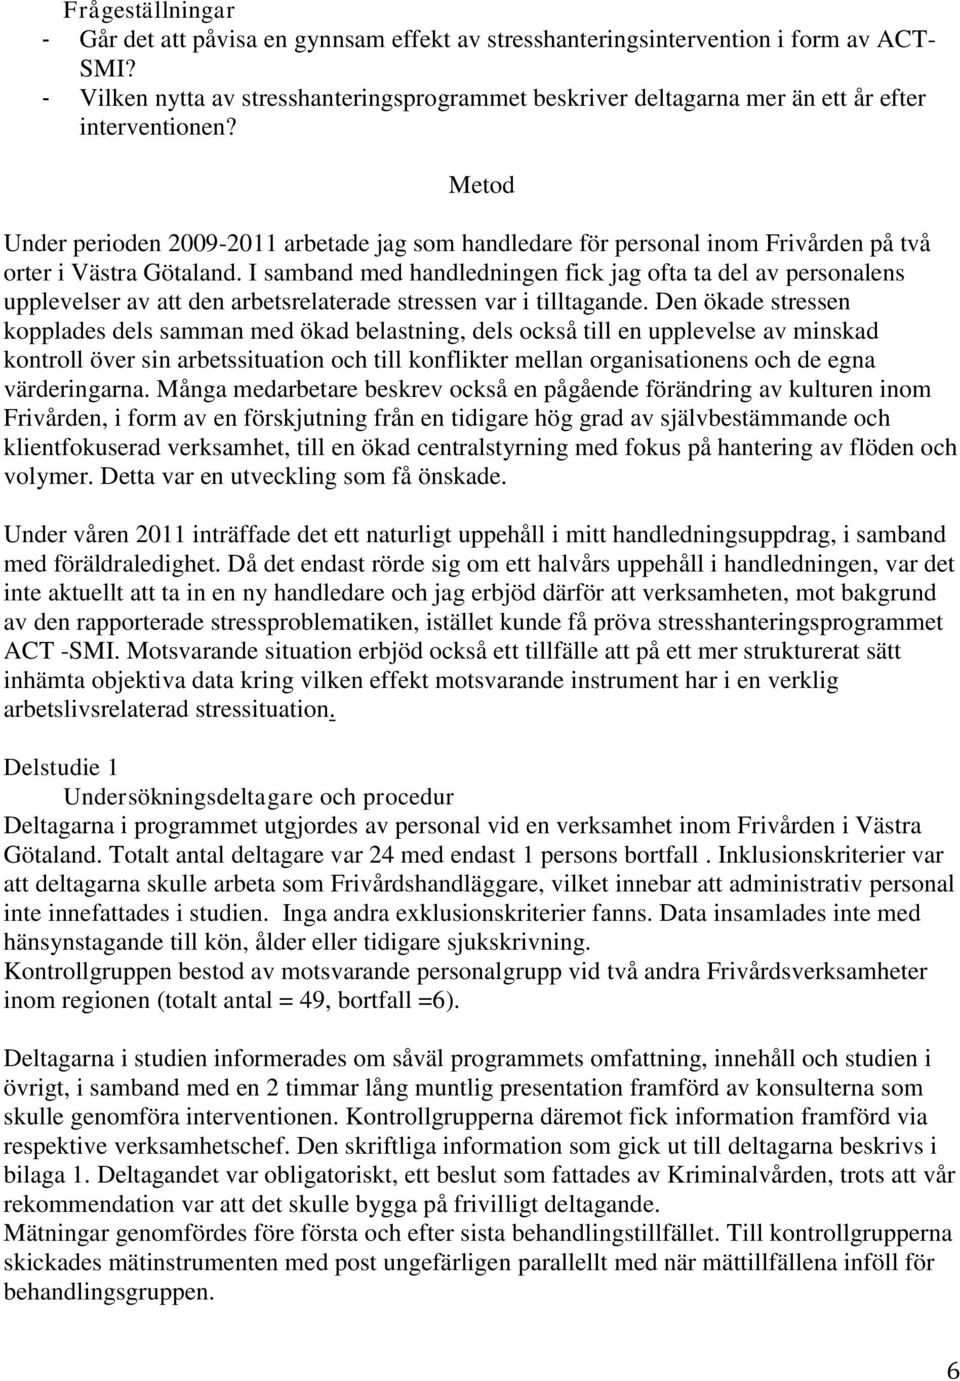 Metod Under perioden 2009-2011 arbetade jag som handledare för personal inom Frivården på två orter i Västra Götaland.